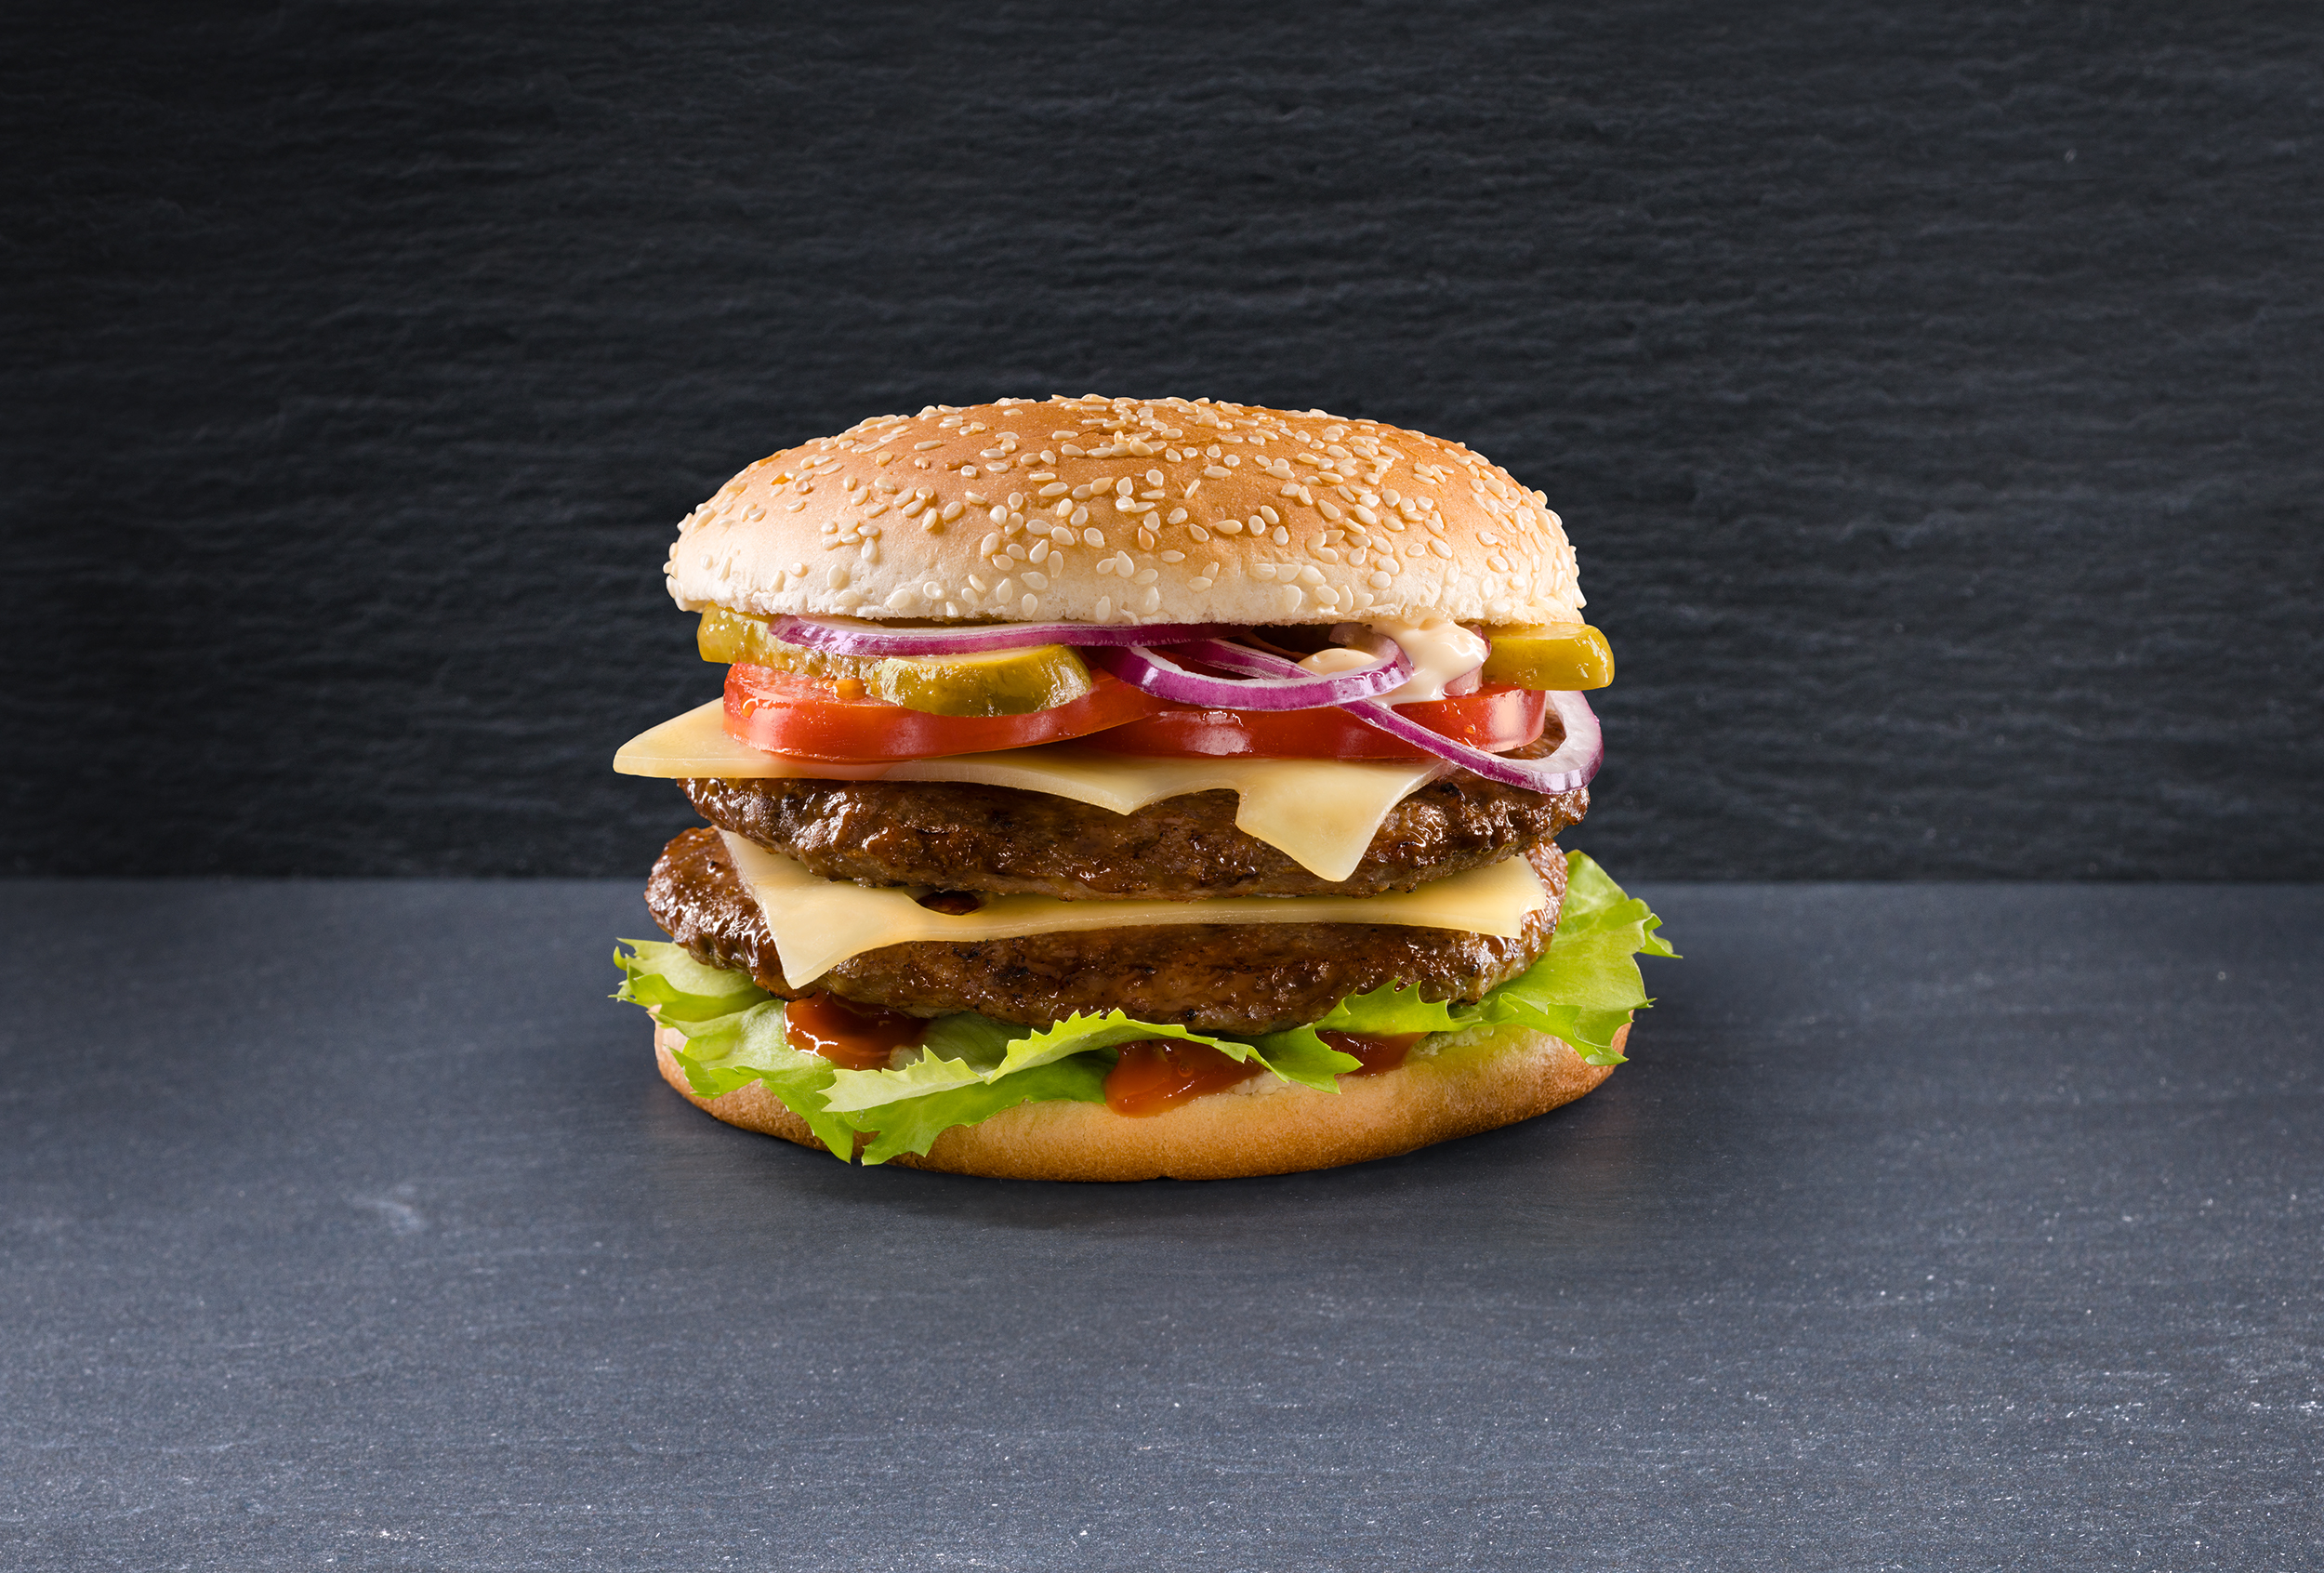 Hamburger “Il migliore della classe” con Emmentaler svizzero AOP